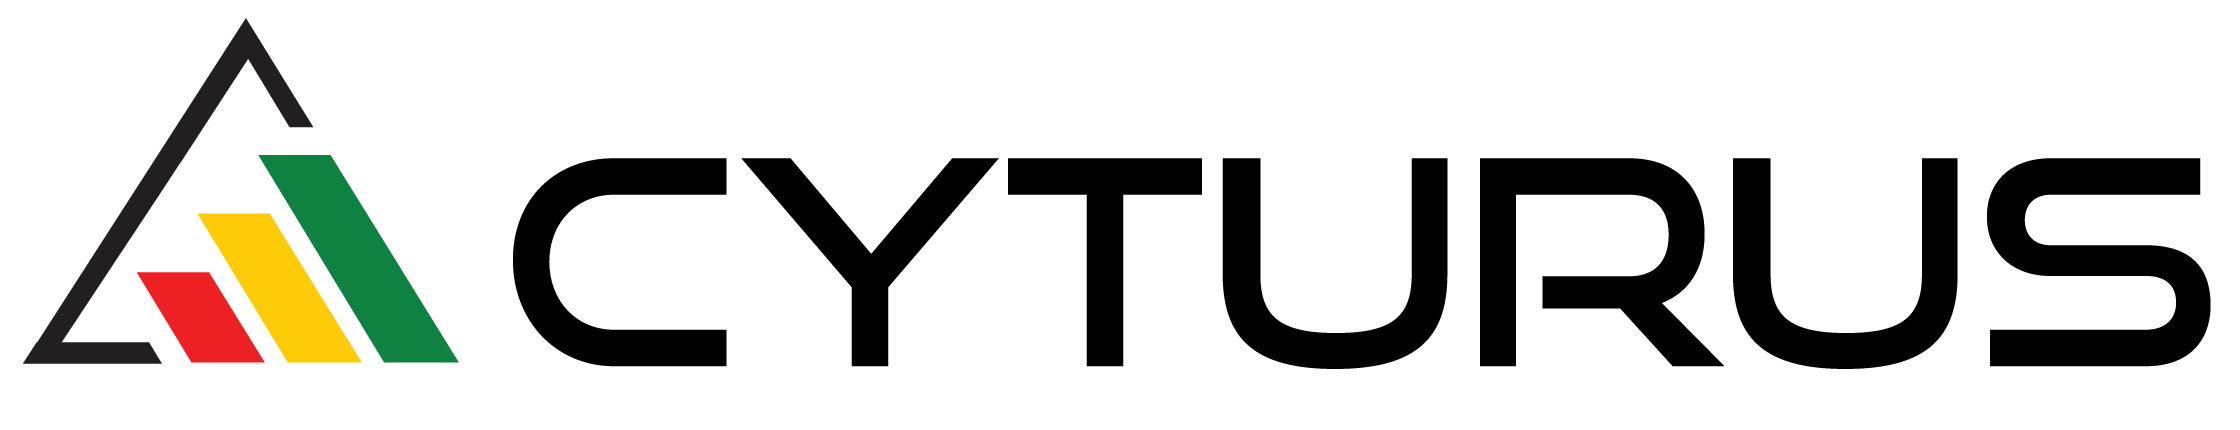 Cyturus logo